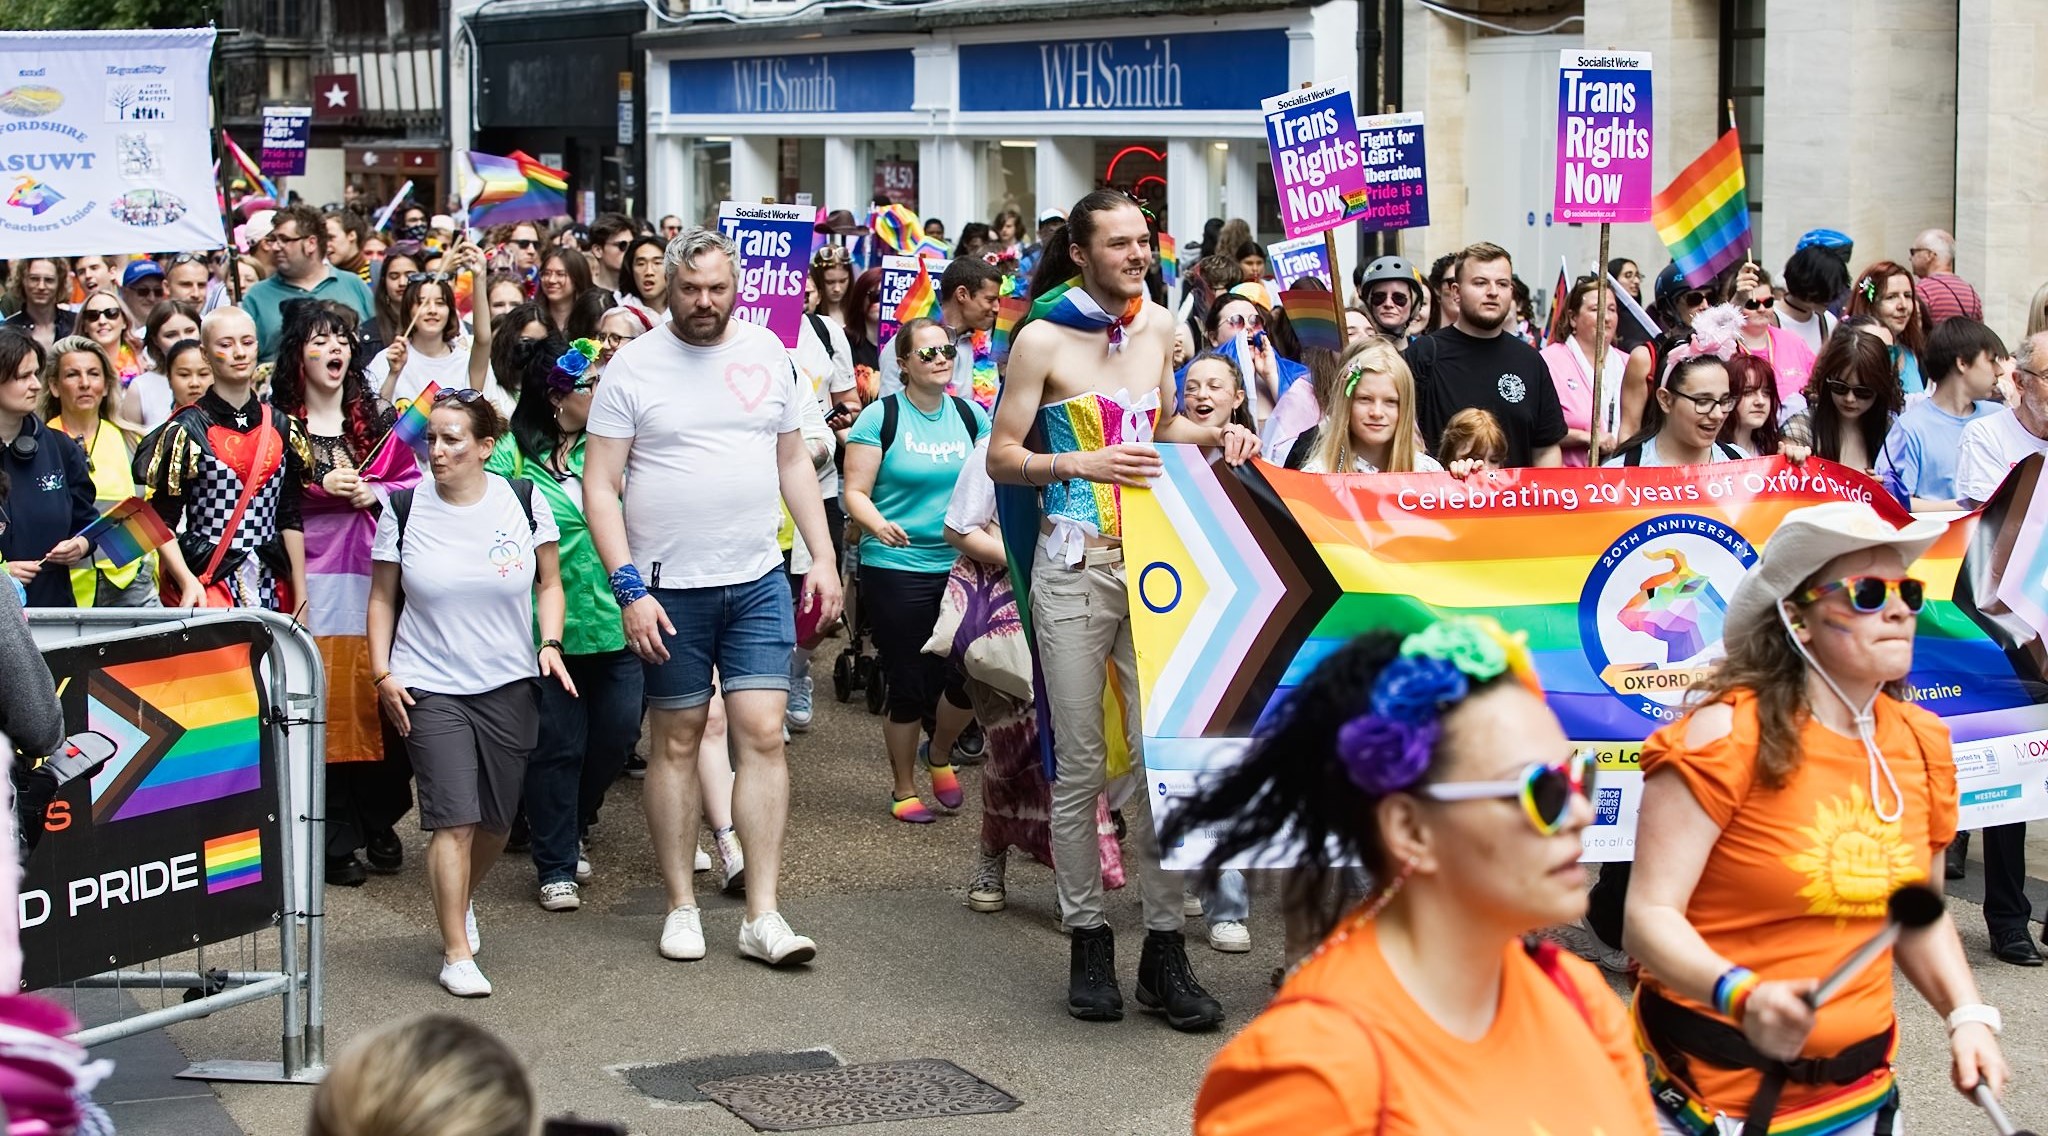 Oxford Pride 2021